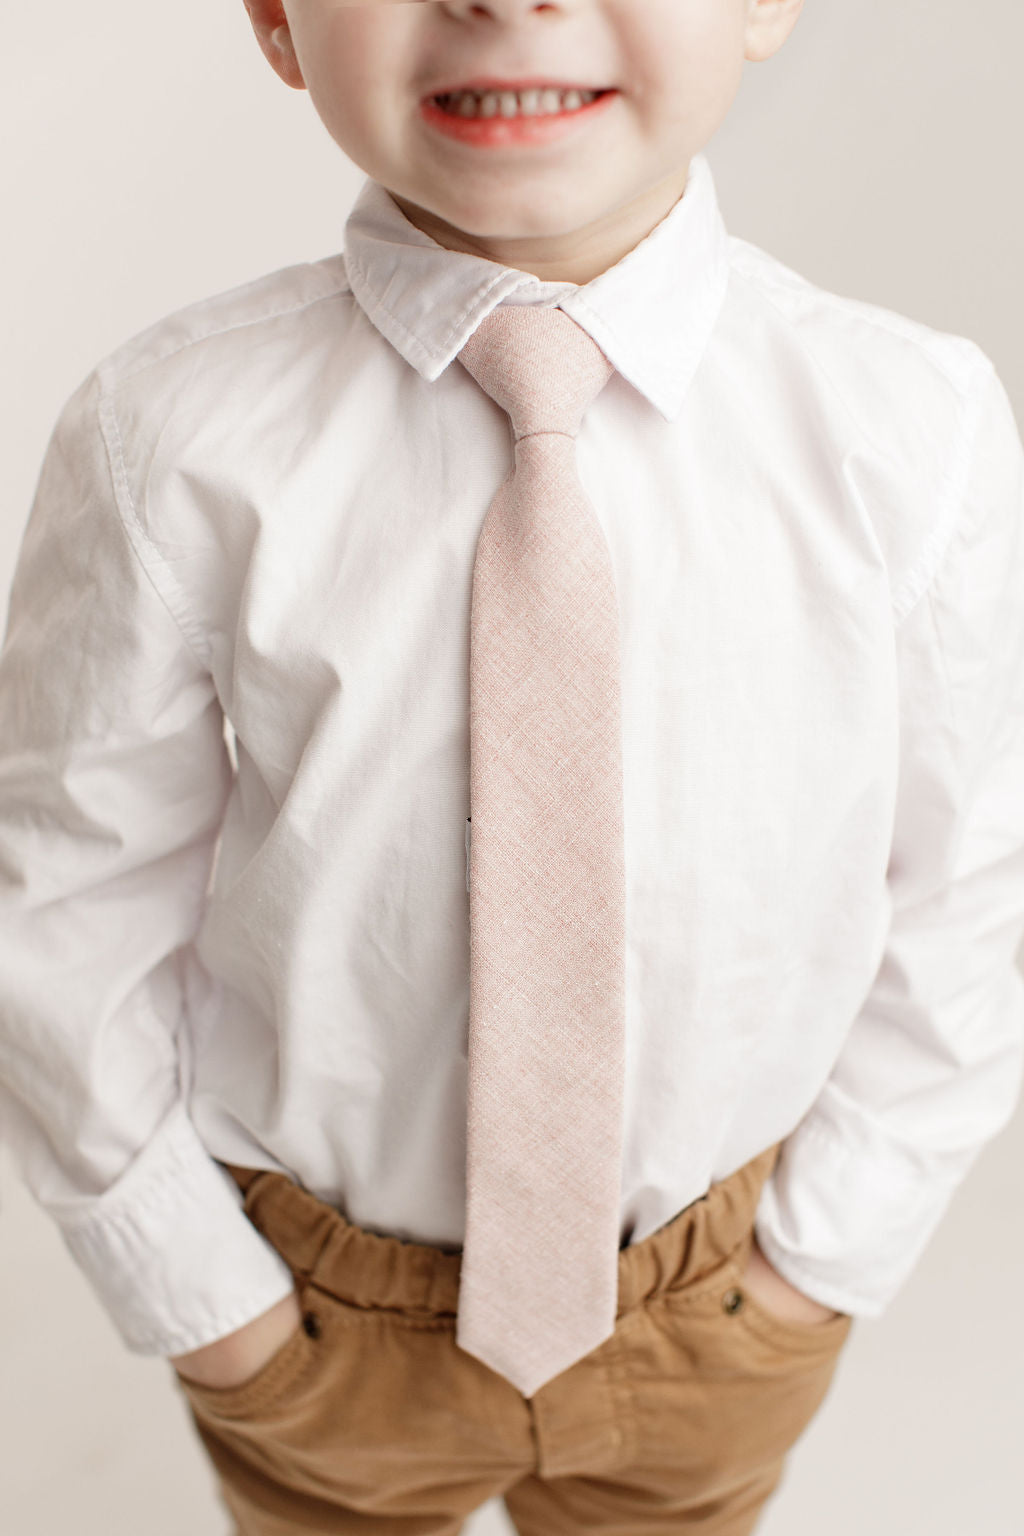 Rose Linen Boys Pre-Tied Tie